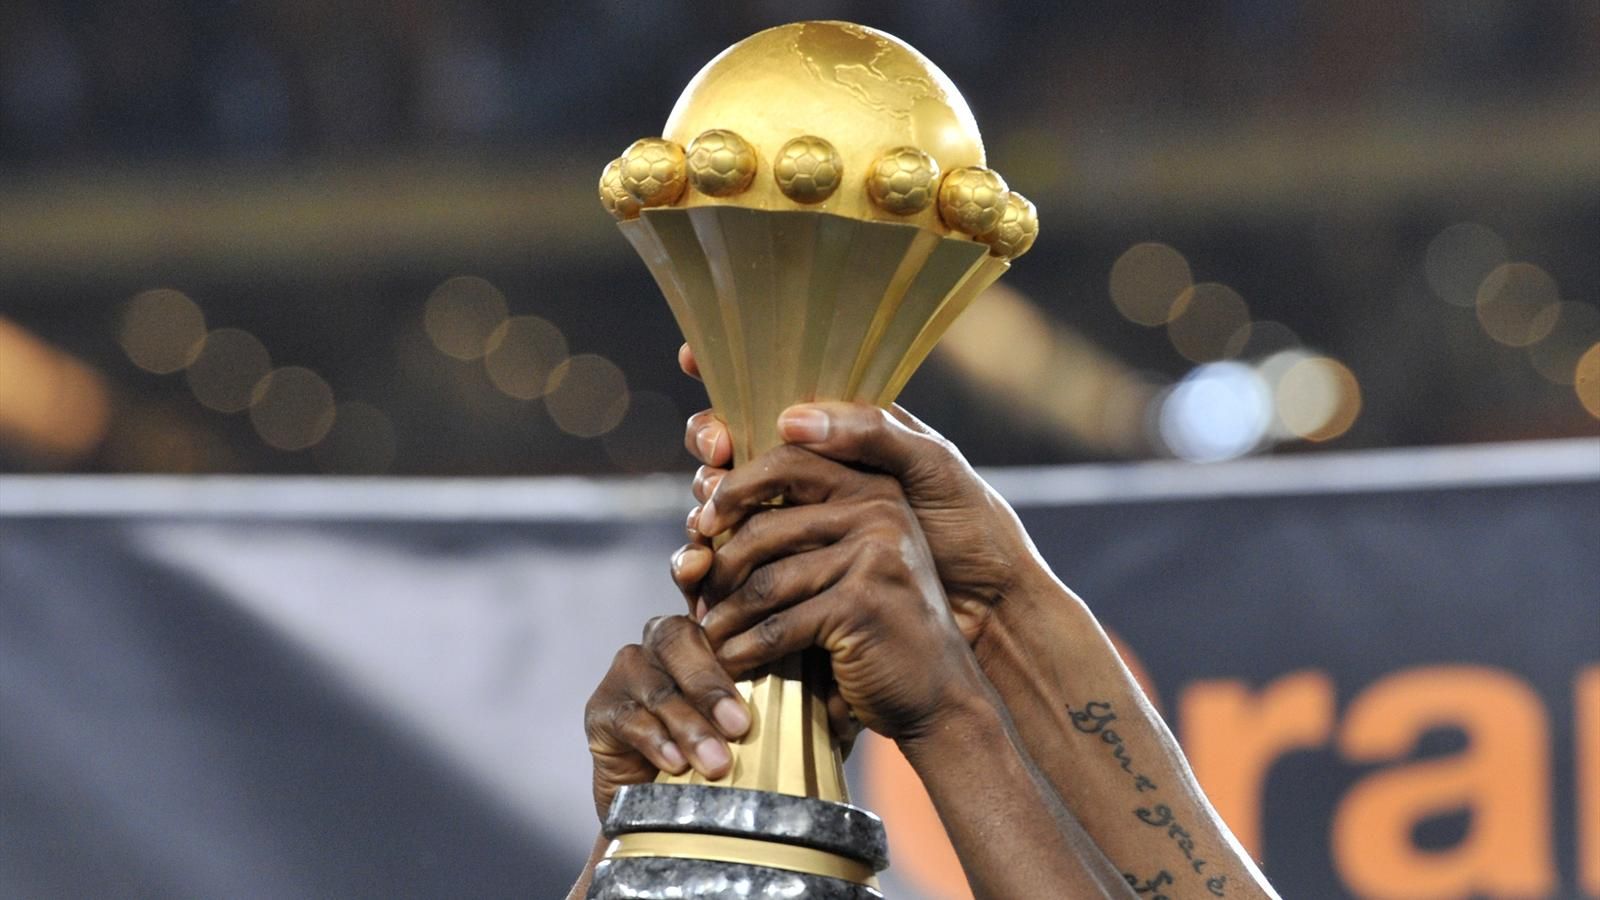 كأس إفريقيا للأمم 2019 (تصفيات): تأجيل سحب القرعة إلى الخميس